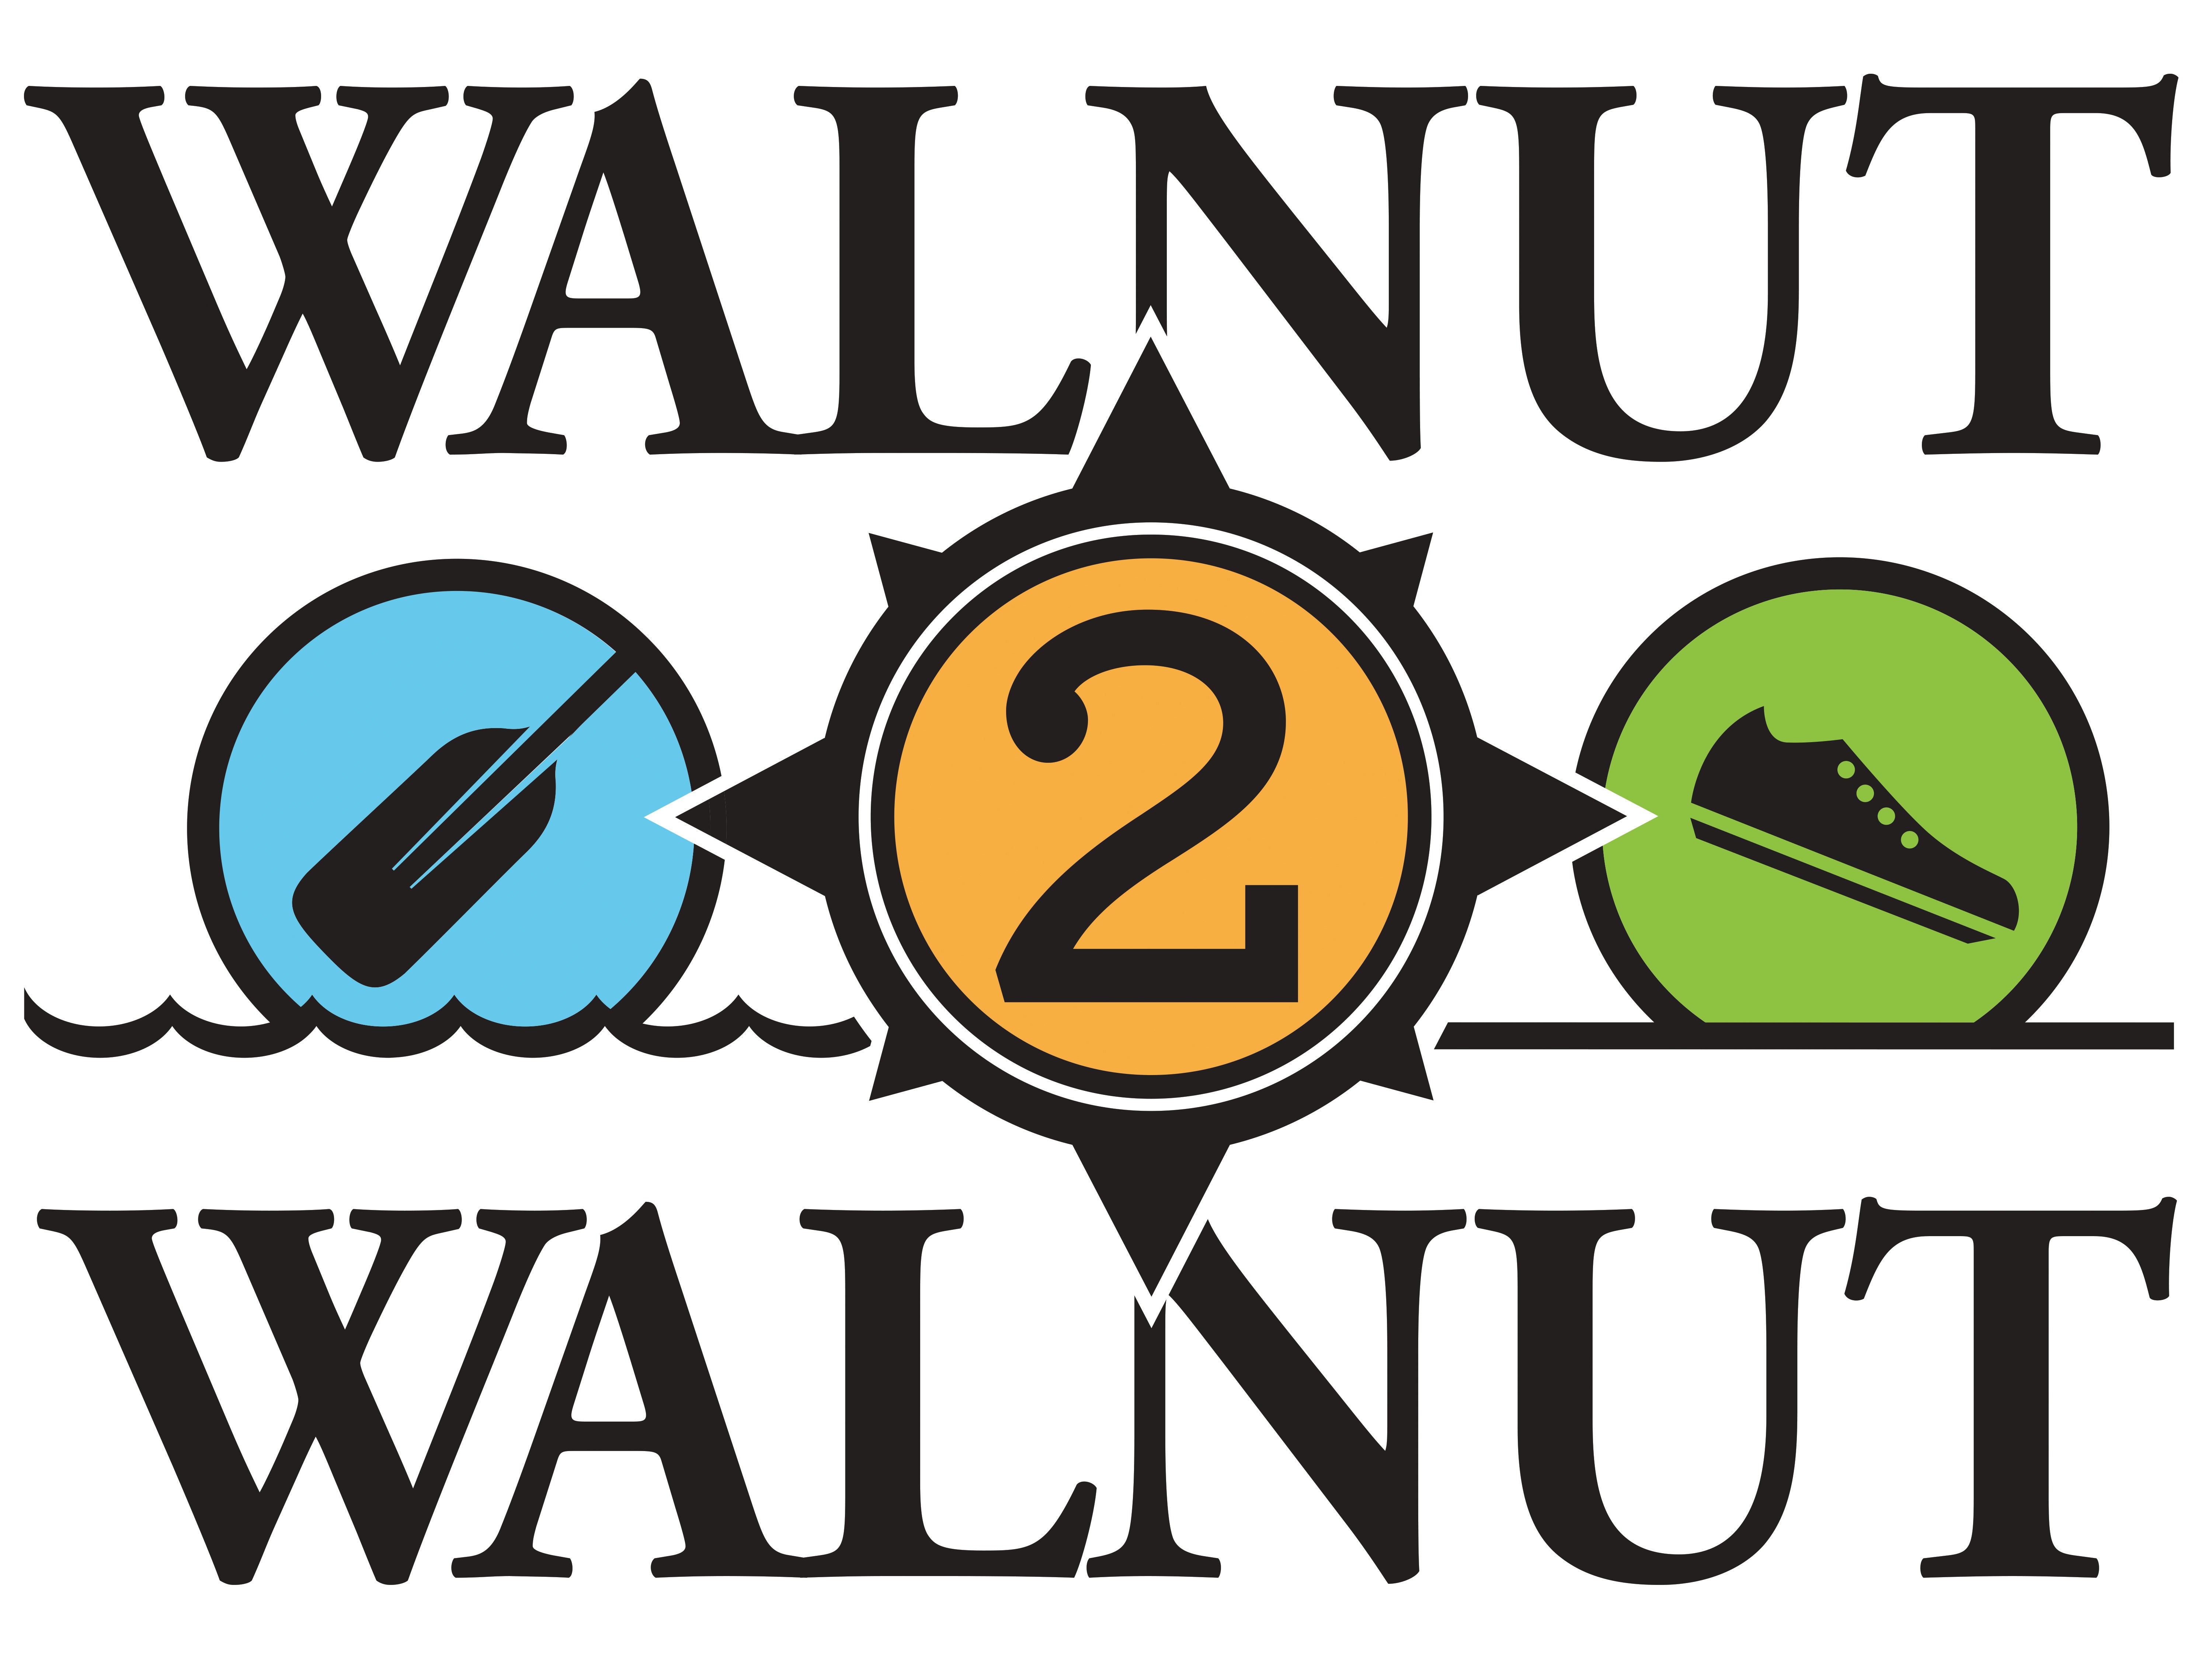 Walnut2Walnut logo, courtesy Independence Seaport Museum